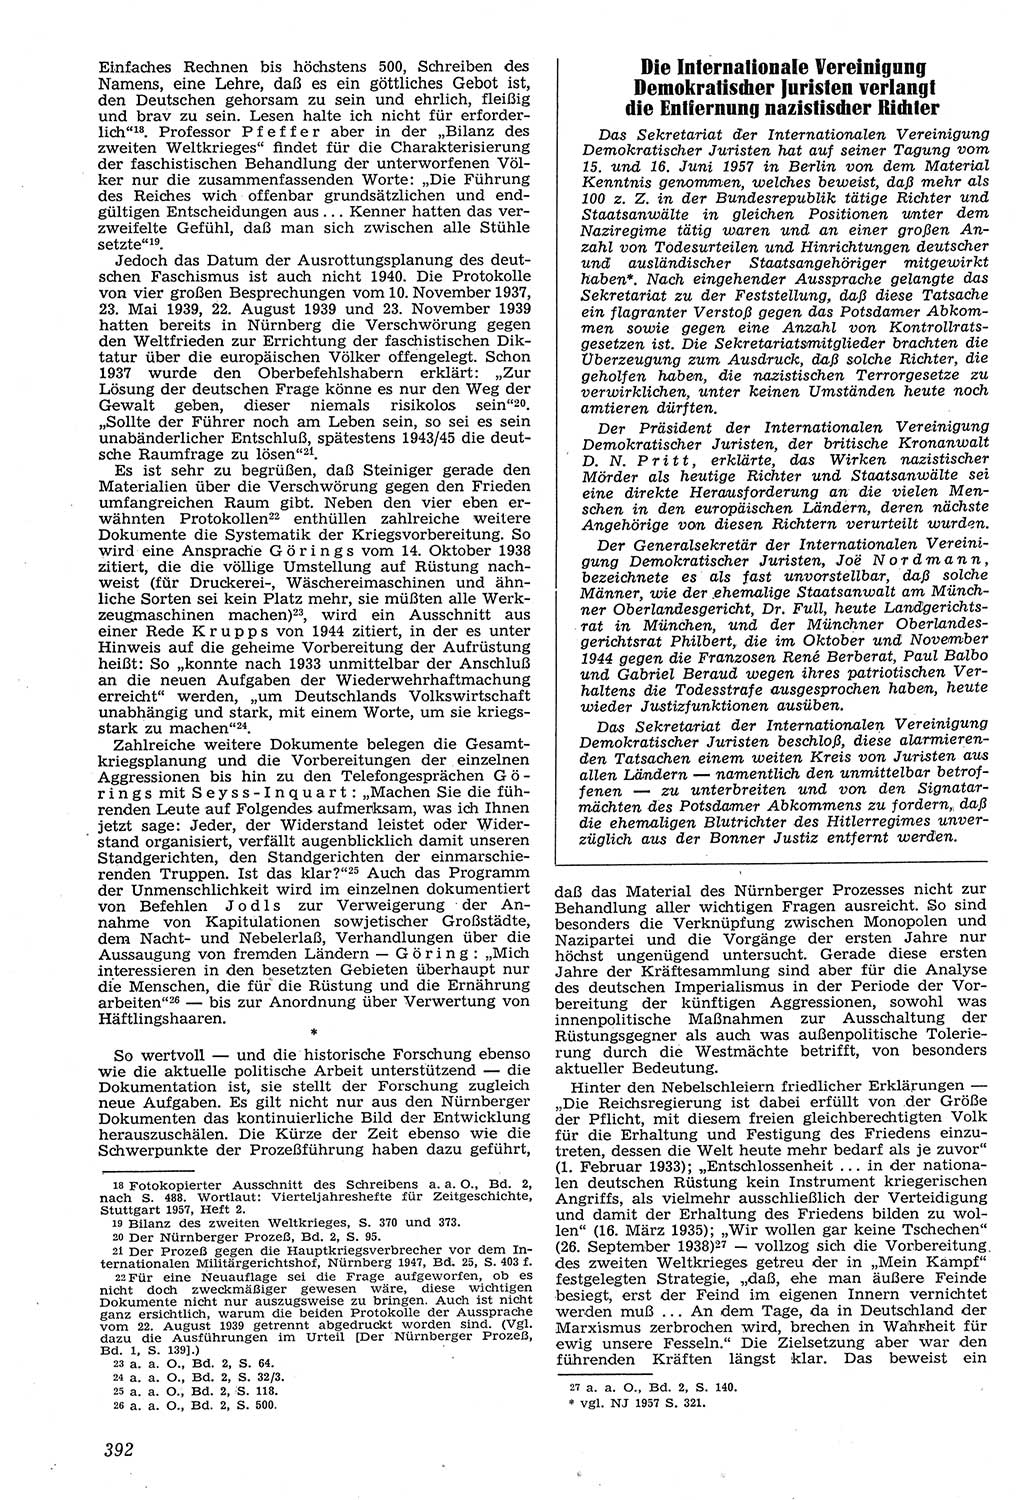 Neue Justiz (NJ), Zeitschrift für Recht und Rechtswissenschaft [Deutsche Demokratische Republik (DDR)], 11. Jahrgang 1957, Seite 392 (NJ DDR 1957, S. 392)